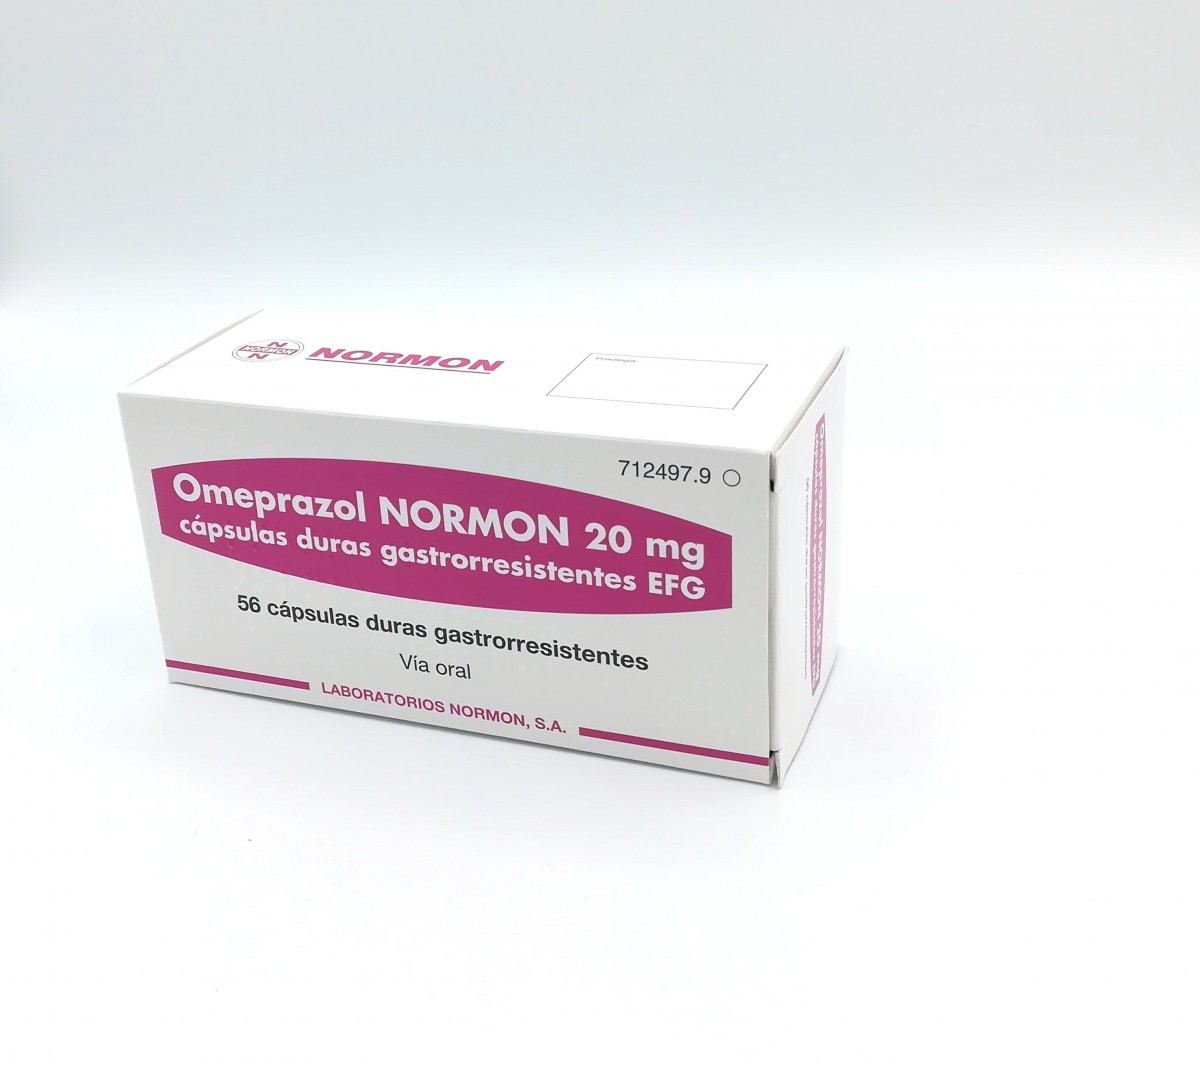 OMEPRAZOL NORMON 20 mg CAPSULAS DURAS GASTRORRESISTENTES EFG,56 cápsulas fotografía del envase.